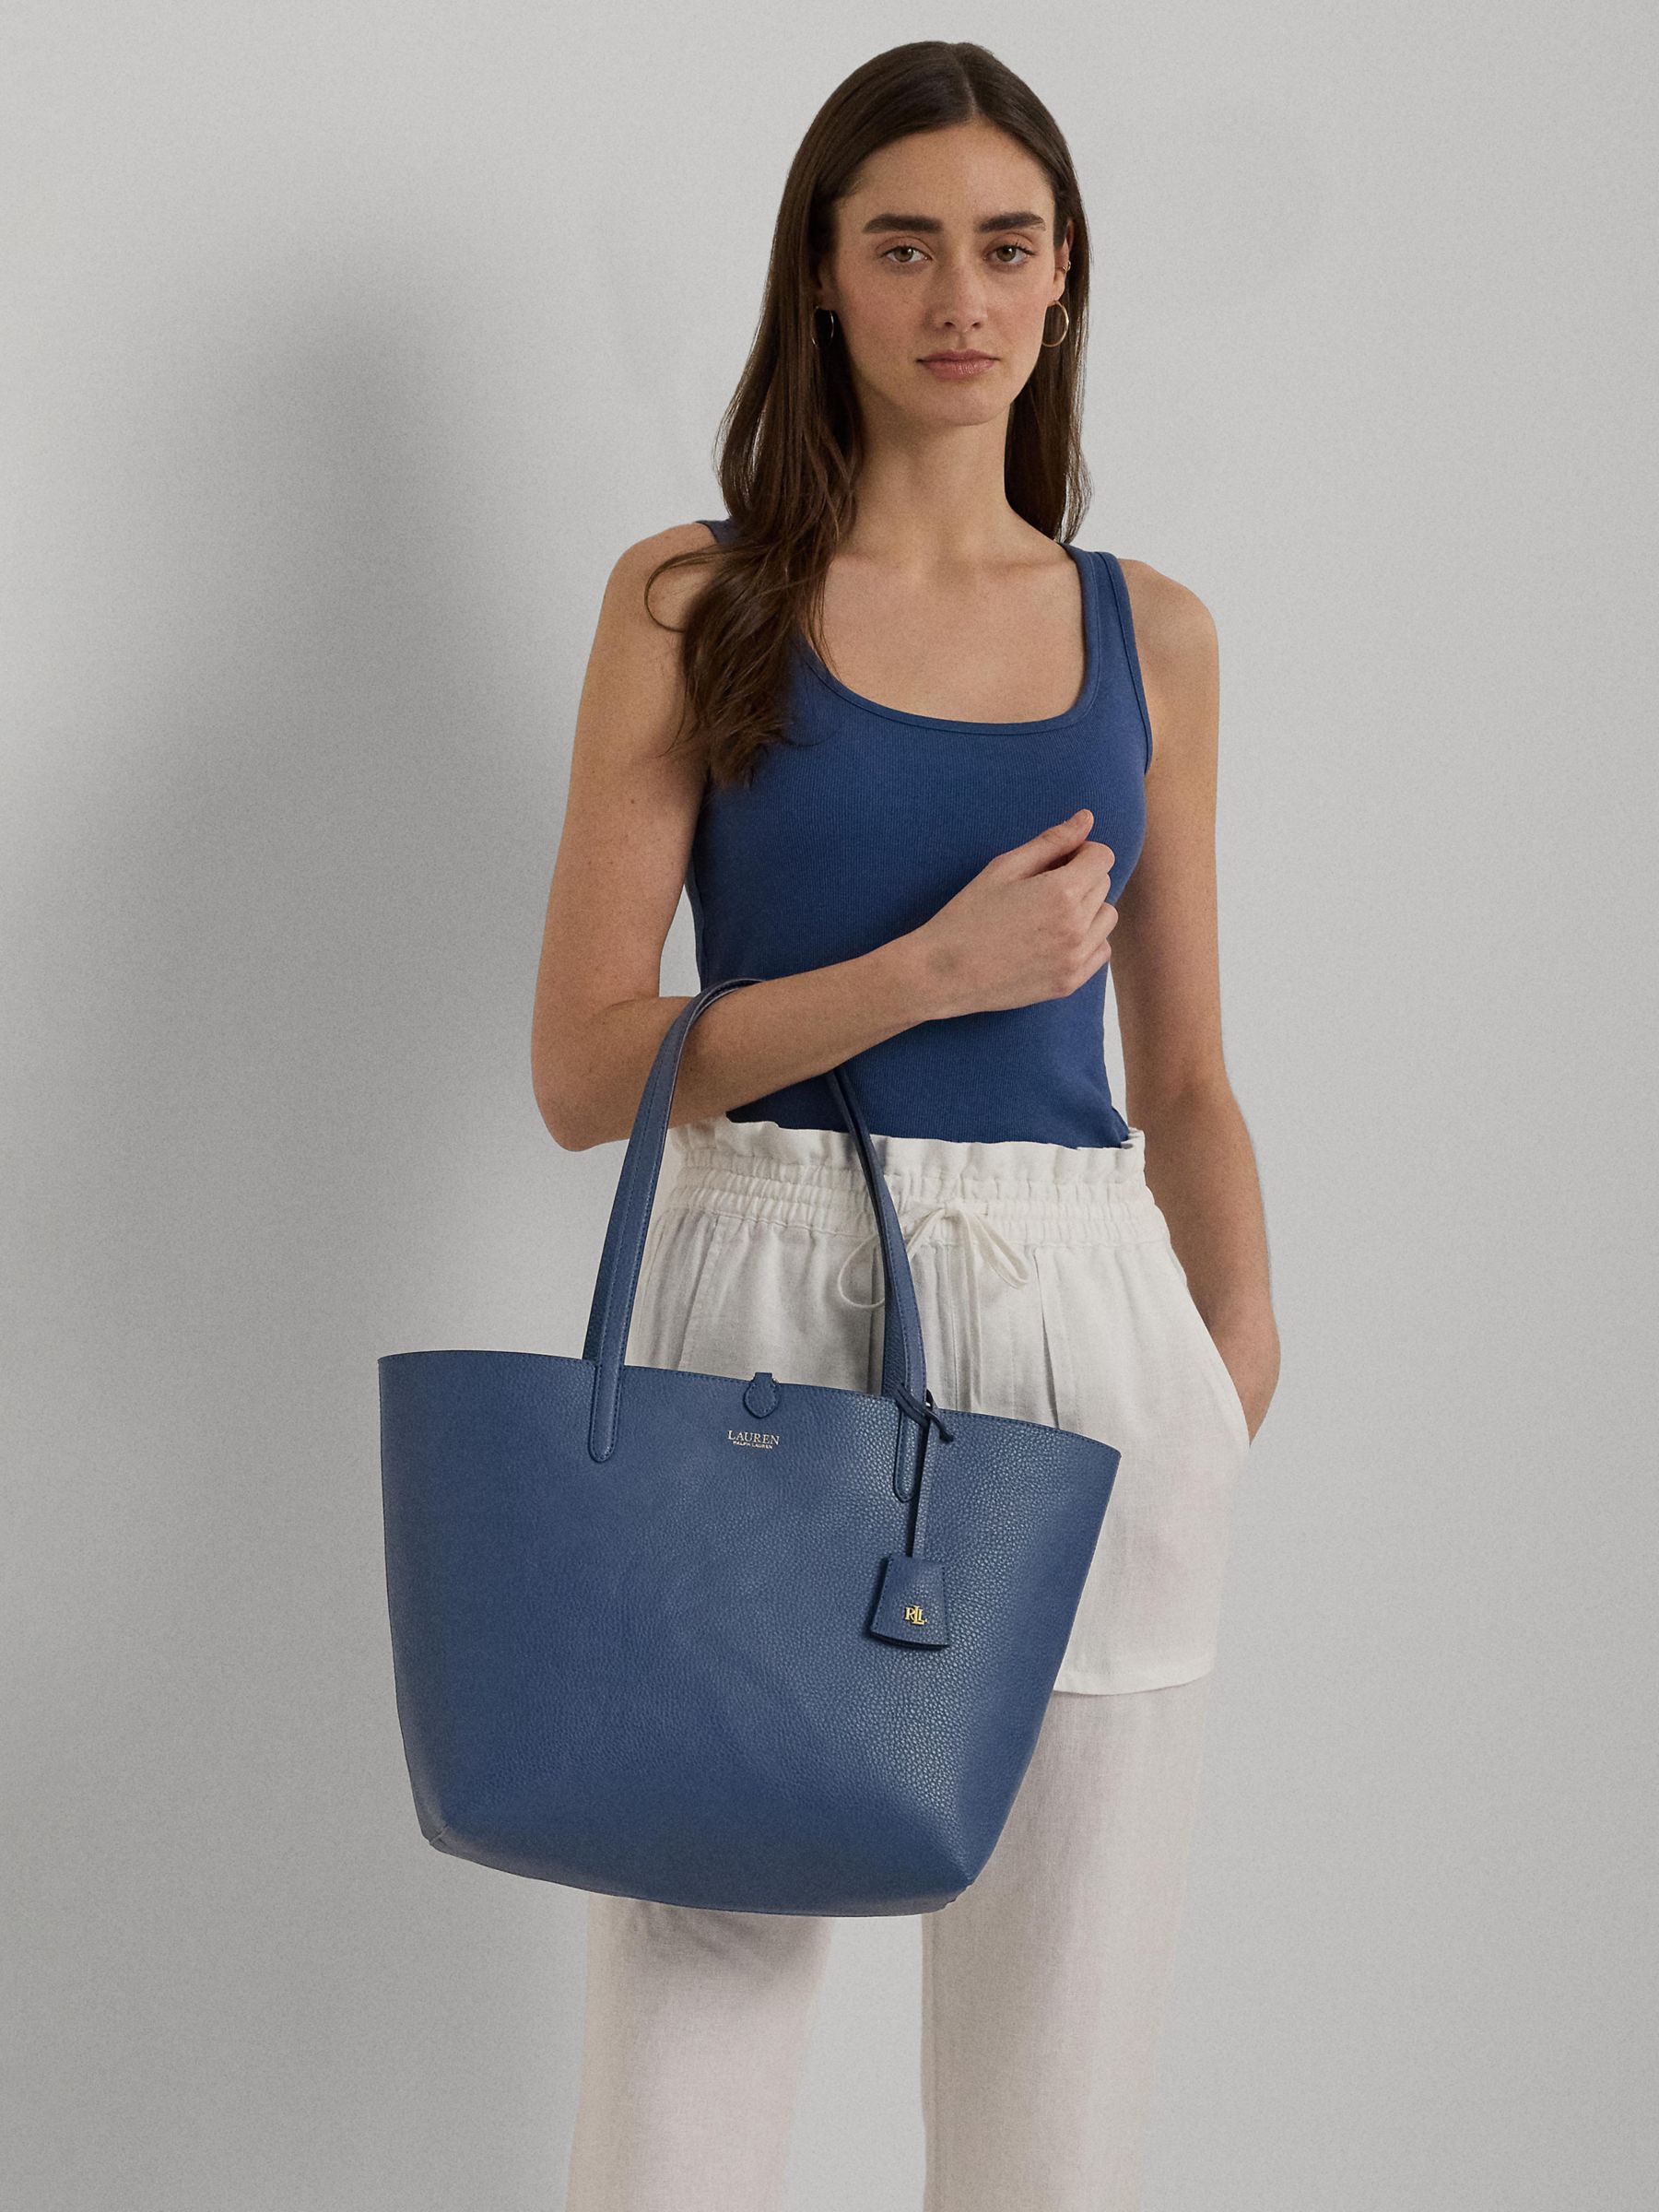 Lauren Ralph Lauren Indigo Blooms Reversible Tote Bag, Indigo Dusk/Antibes